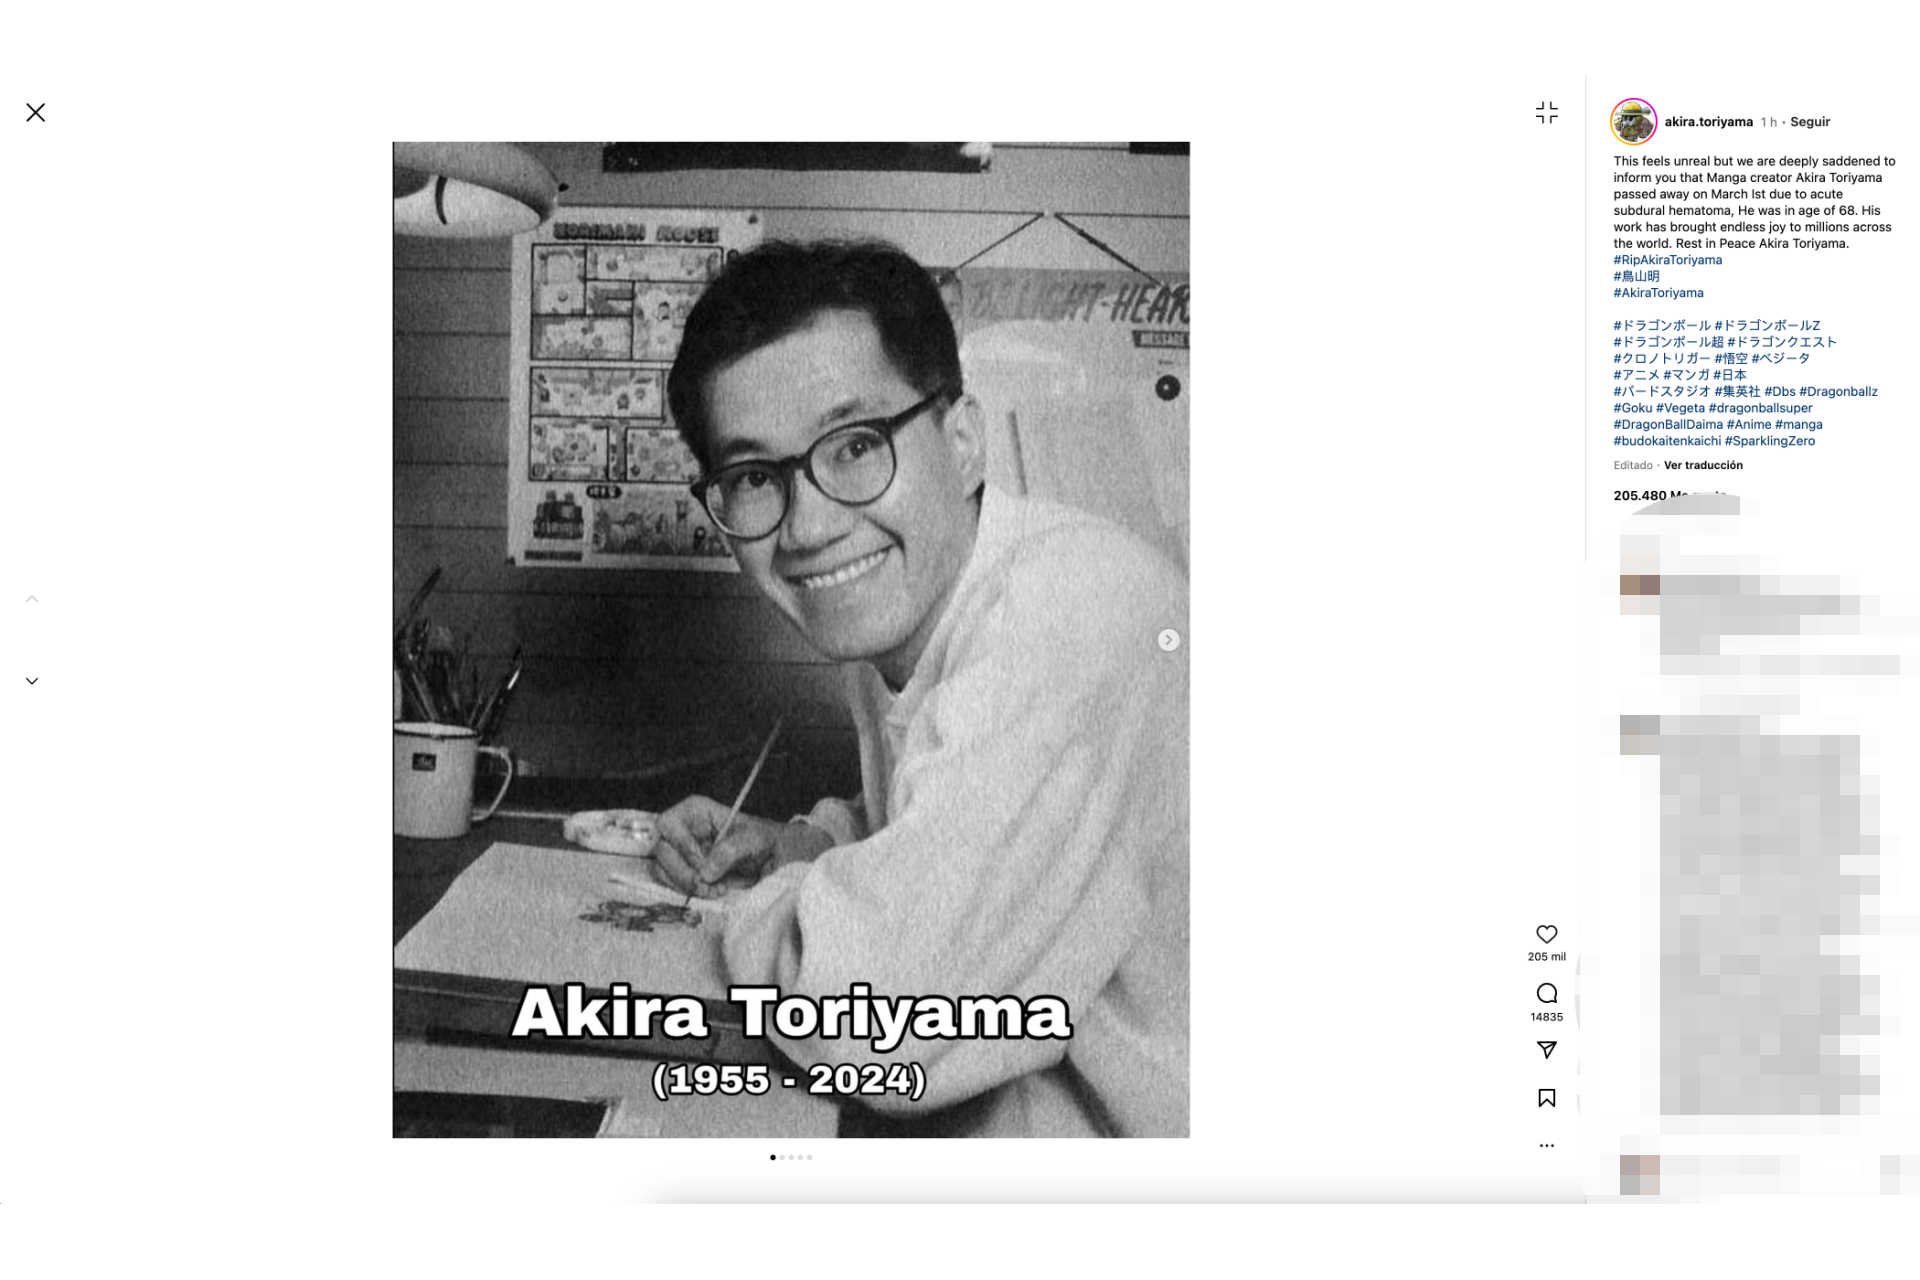 Who is Akira Toriyama?